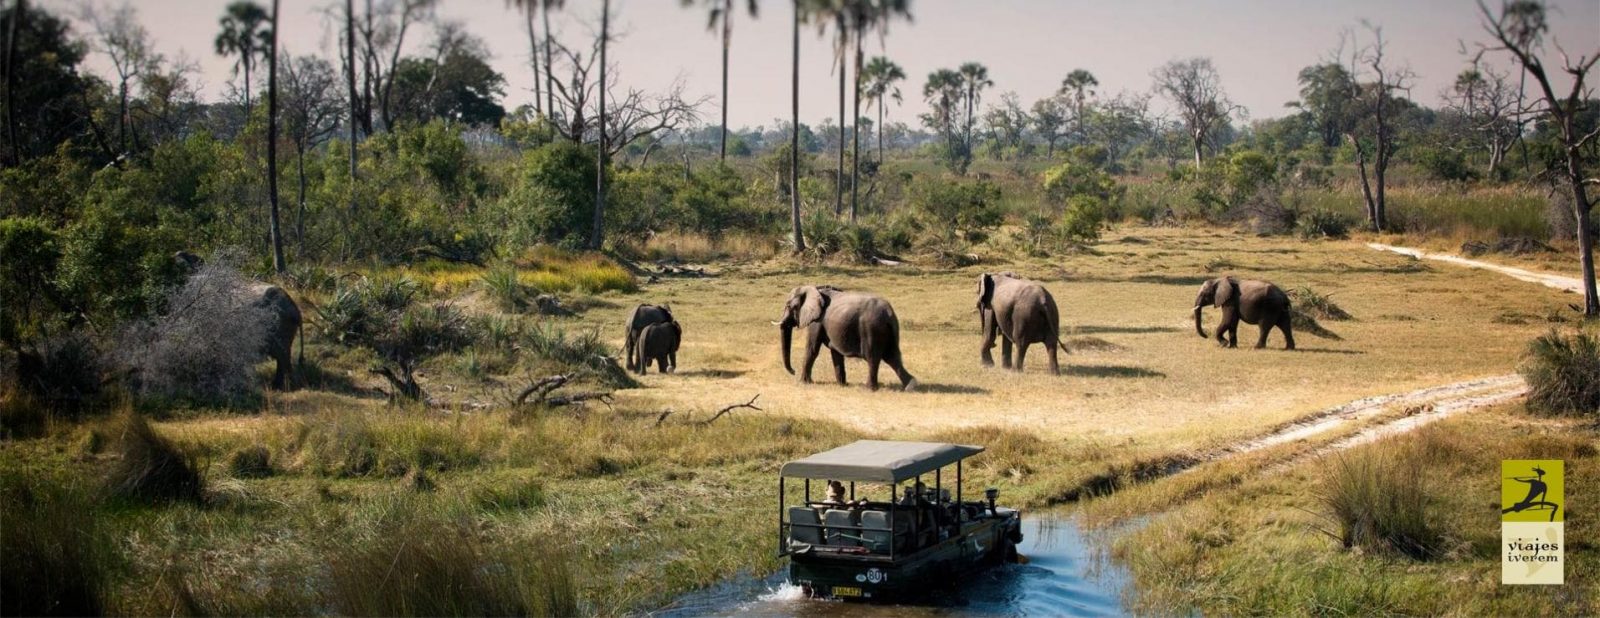 Parques naturales de Tanzania